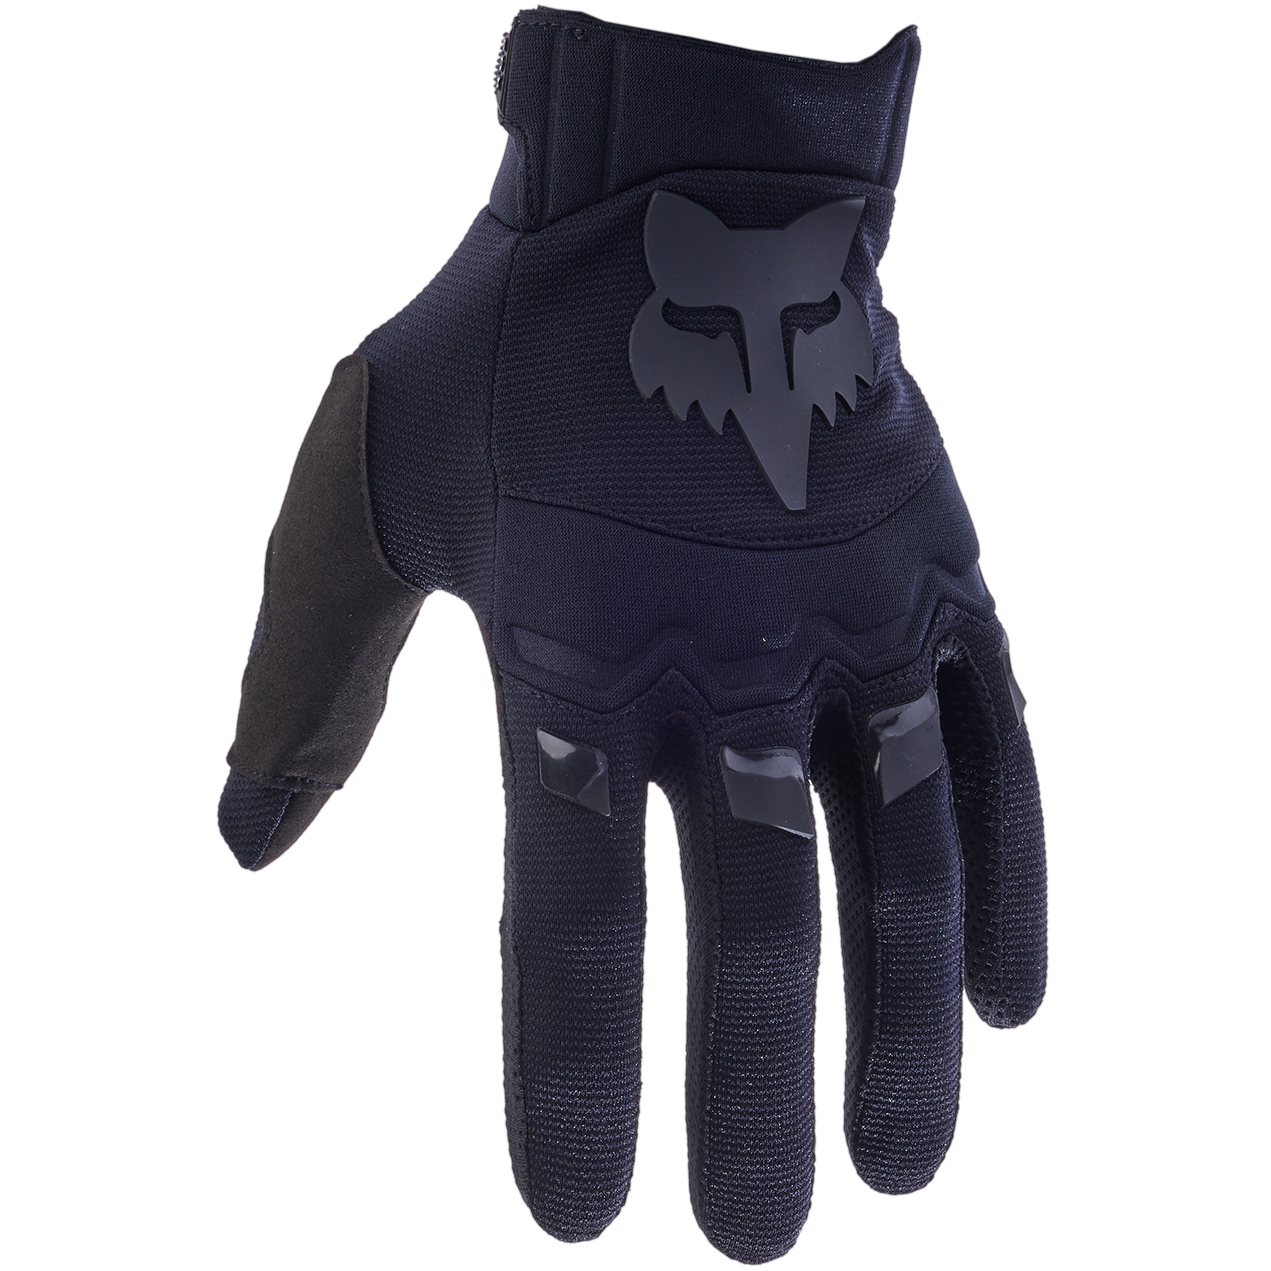 Productfoto van FOX Dirtpaw MTB Handschoenen - zwart/zwart